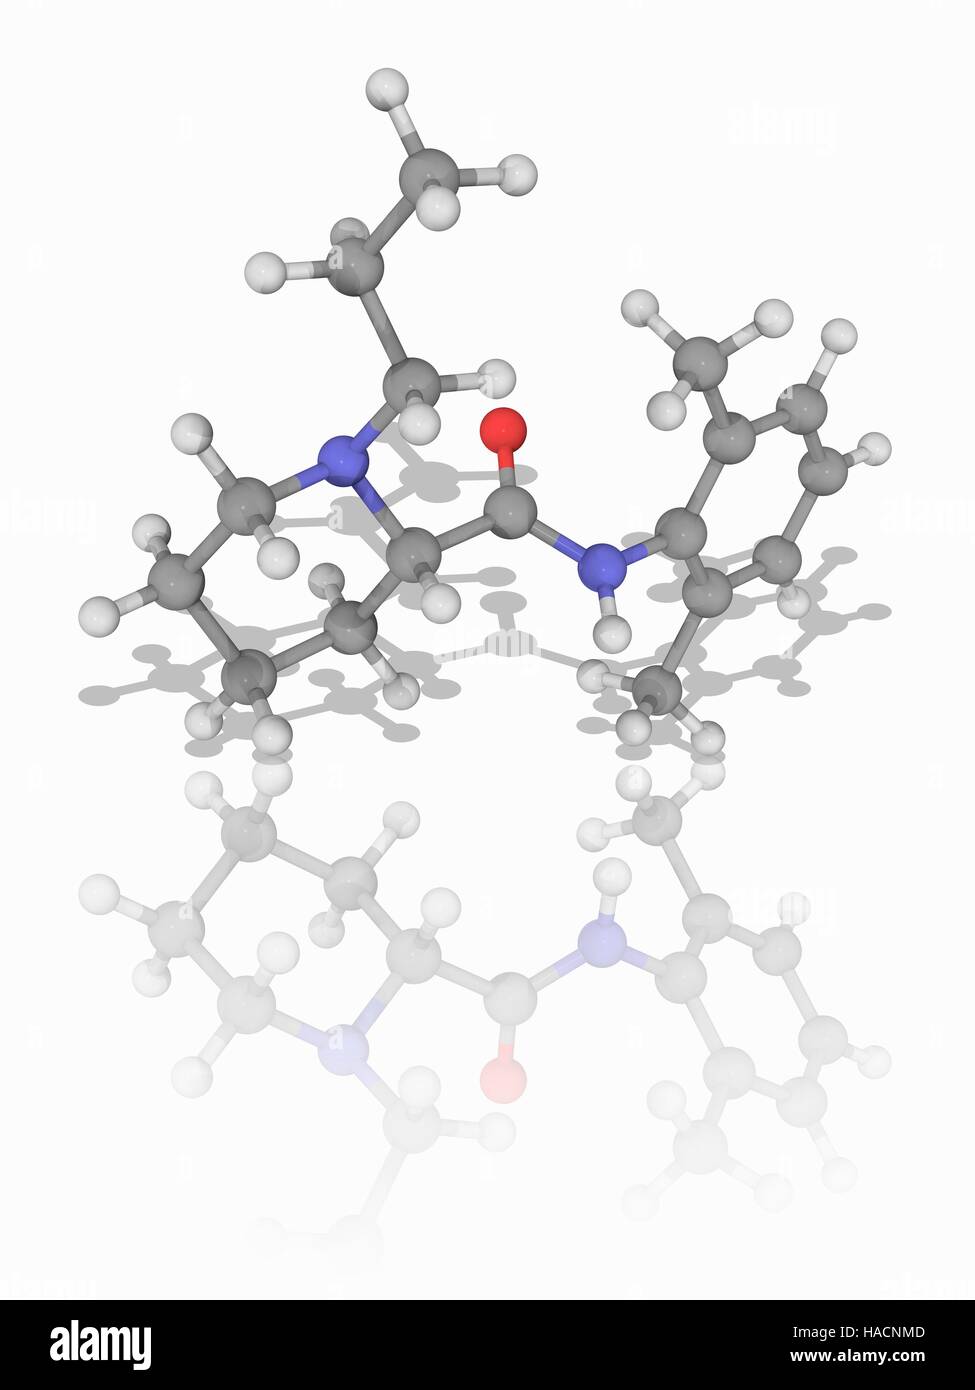 Ropivacaine. Il modello molecolare dell'anestetico locale farmaco (C17.H26.N2.O), commercializzato come Naropin. Chimicamente esso è un piperidina e un anilide. Gli atomi sono rappresentati da sfere e sono codificati a colori: carbonio (grigio), Idrogeno (bianco), Azoto (blu) e ossigeno (rosso). Illustrazione. Foto Stock